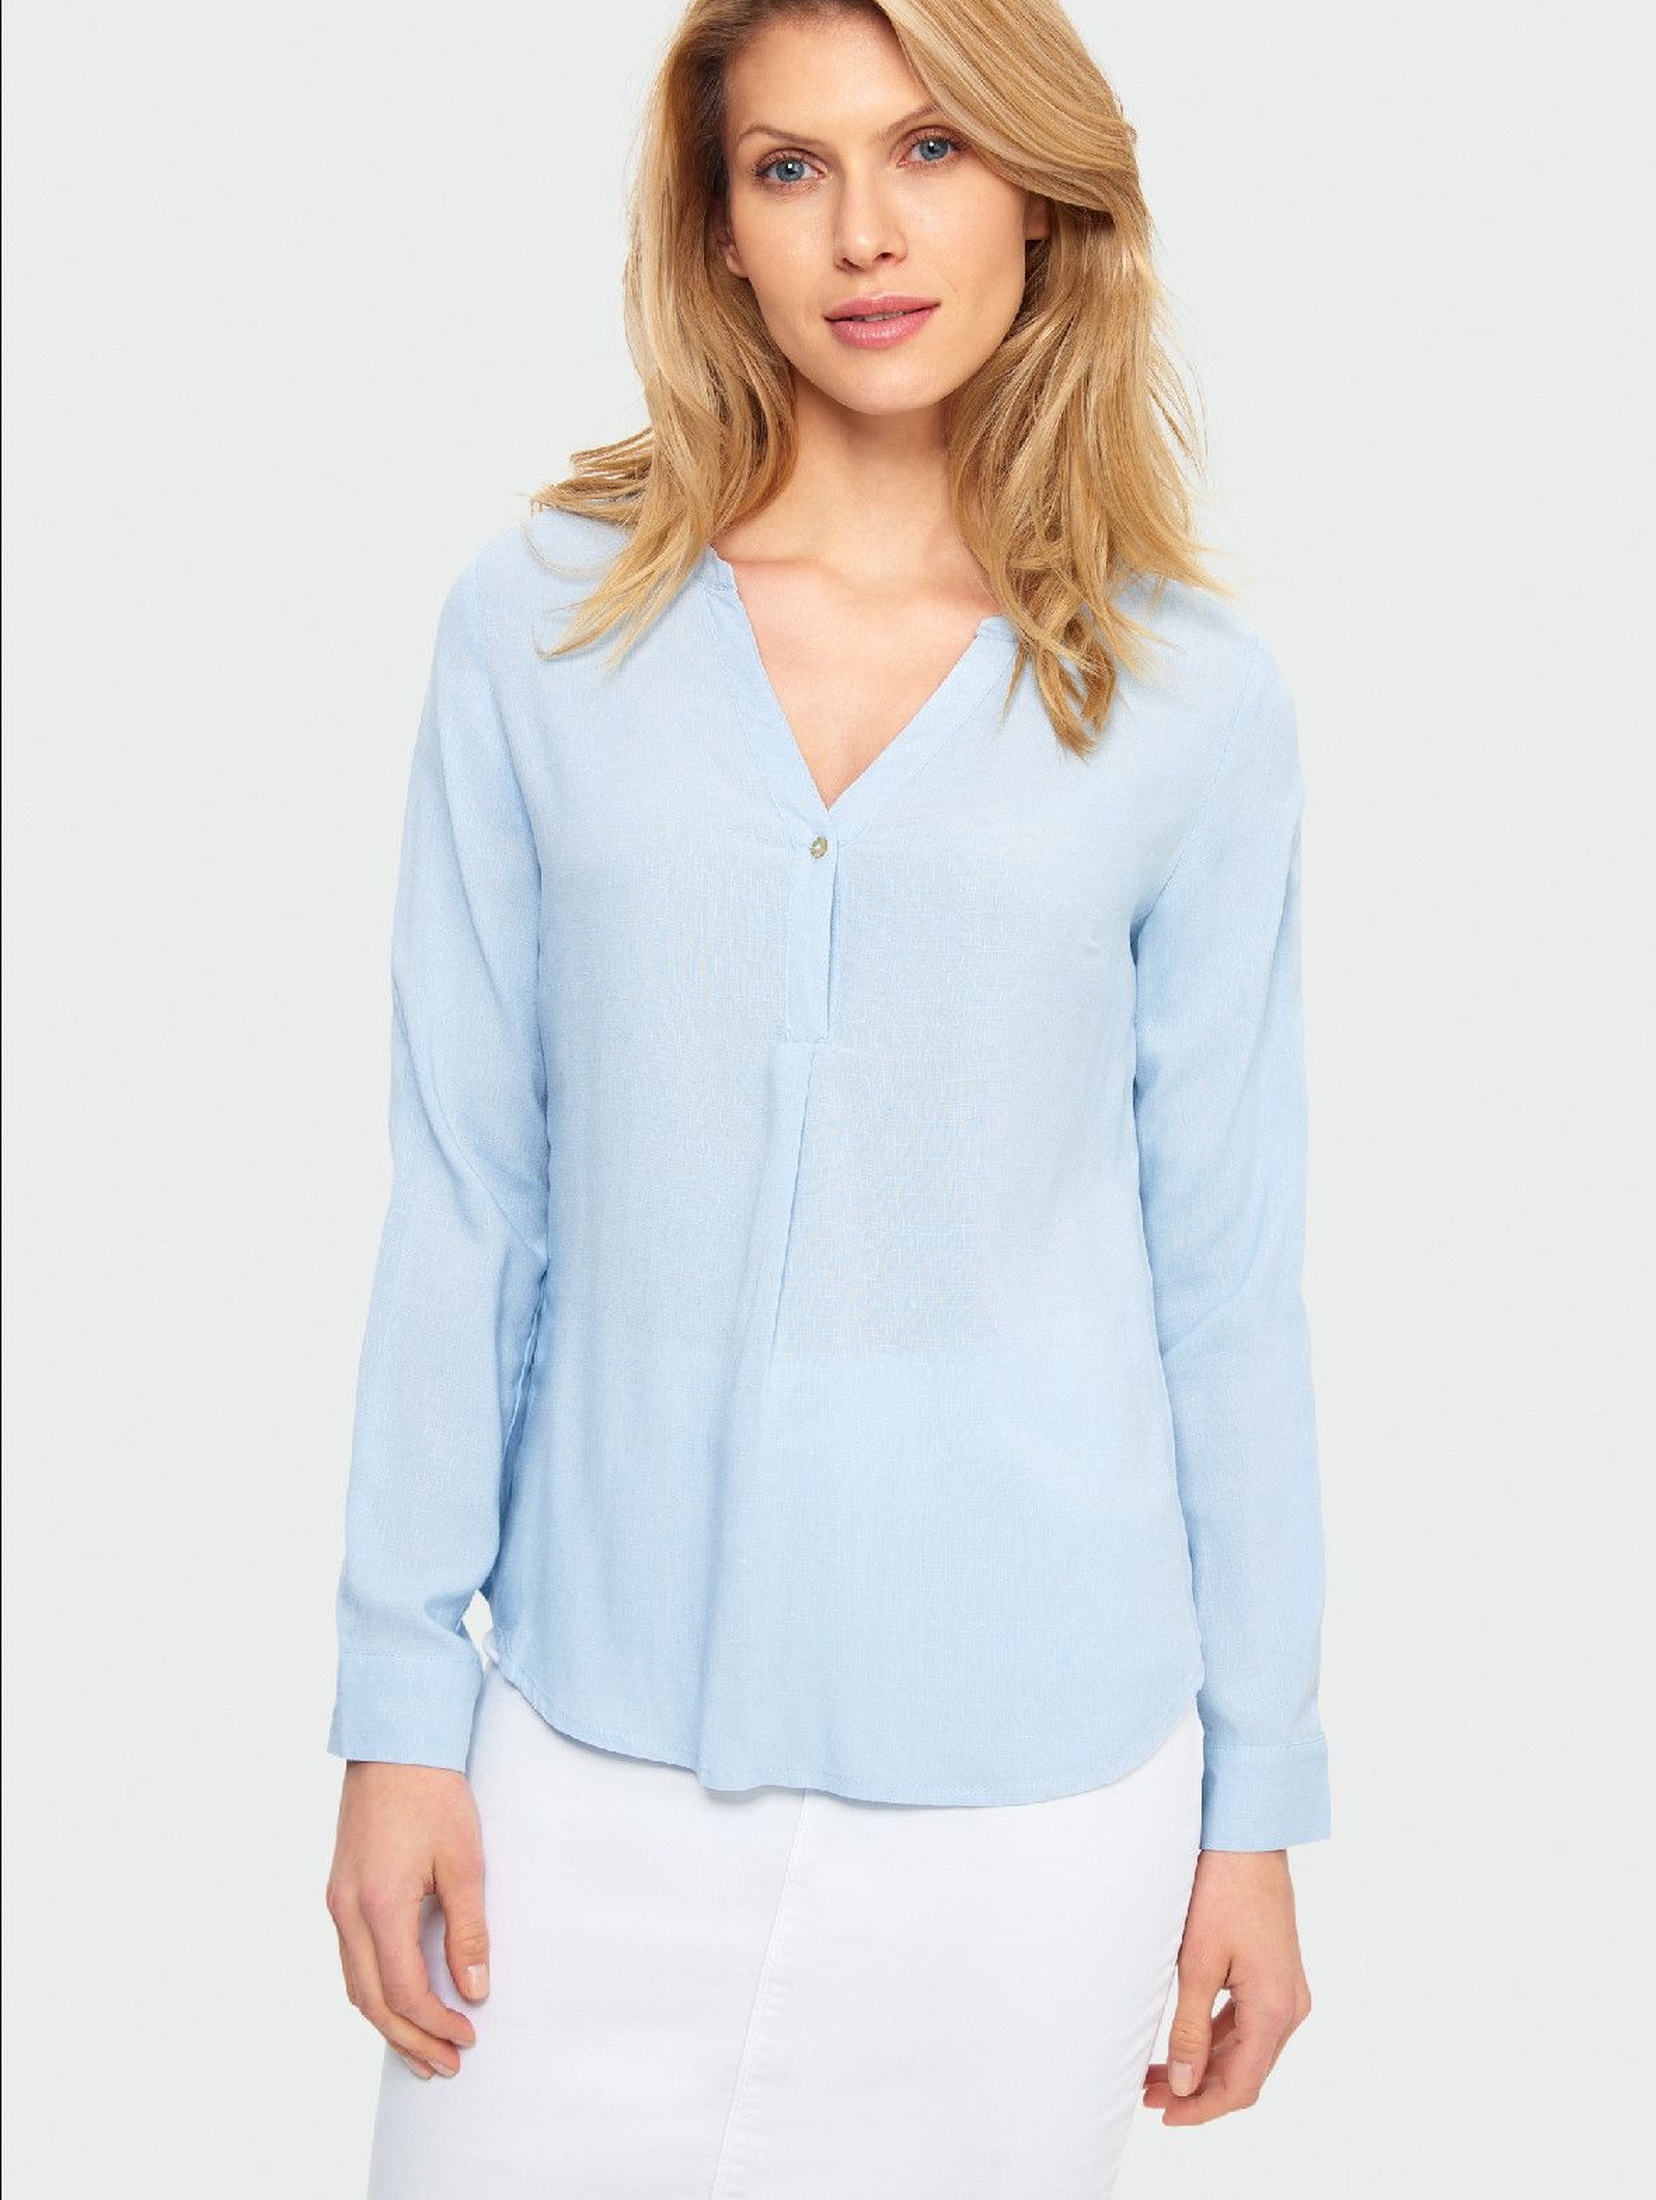 Bluzka damska koszulowa z długim rękawem-niebieska